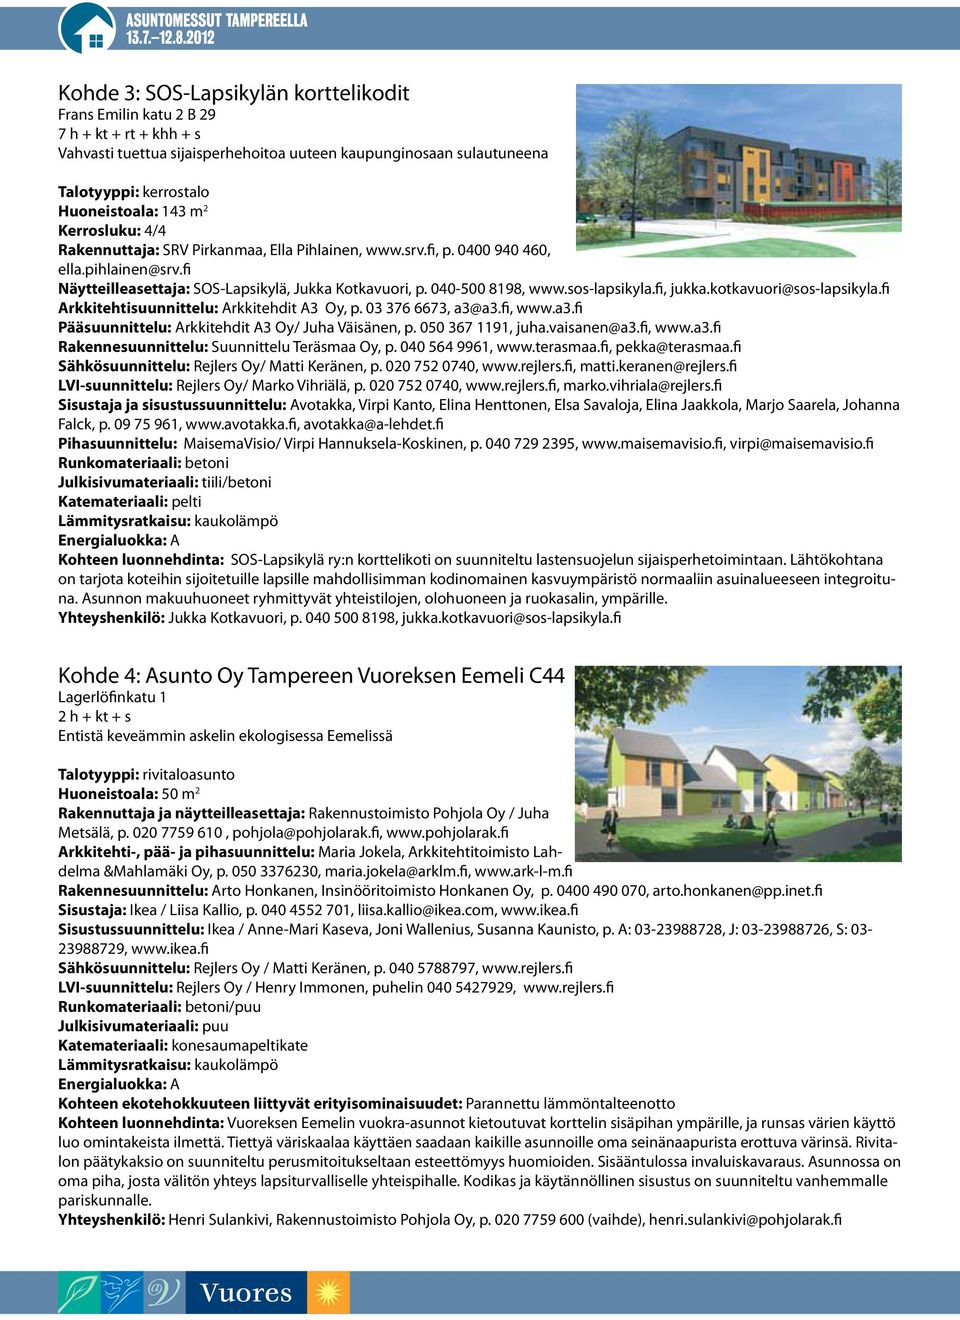 sos-lapsikyla.fi, jukka.kotkavuori@sos-lapsikyla.fi Arkkitehtisuunnittelu: Arkkitehdit A3 Oy, p. 03 376 6673, a3@a3.fi, www.a3.fi Pääsuunnittelu: Arkkitehdit A3 Oy/ Juha Väisänen, p.